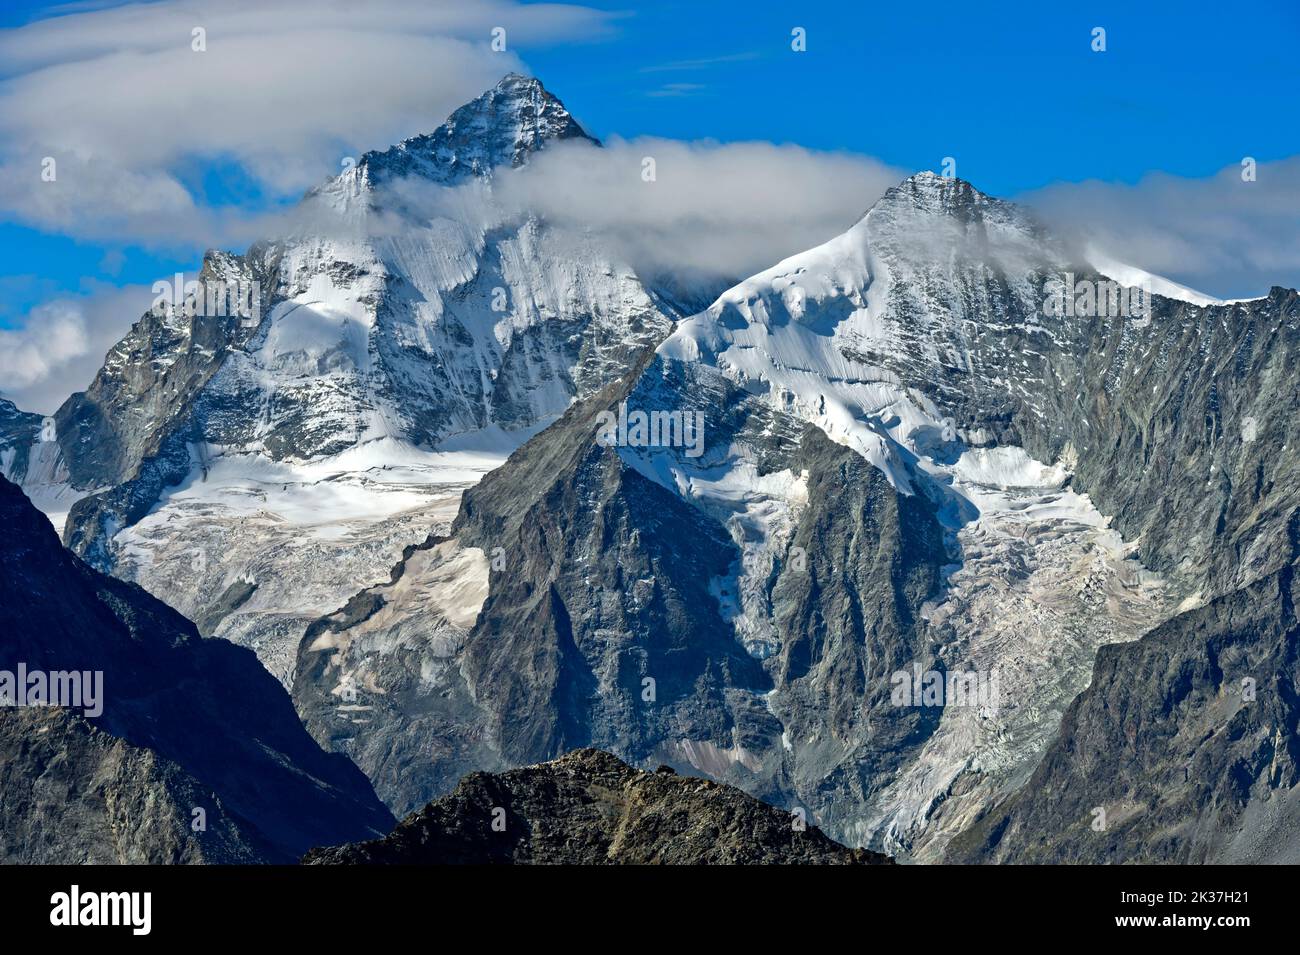 Nel cuore delle Alpi del Vallese, catena di cime, f.l.t.r. Dent Blanche, Grand Cornier, Zinal, Val d'Anniviers, Vallese, Svizzera Foto Stock